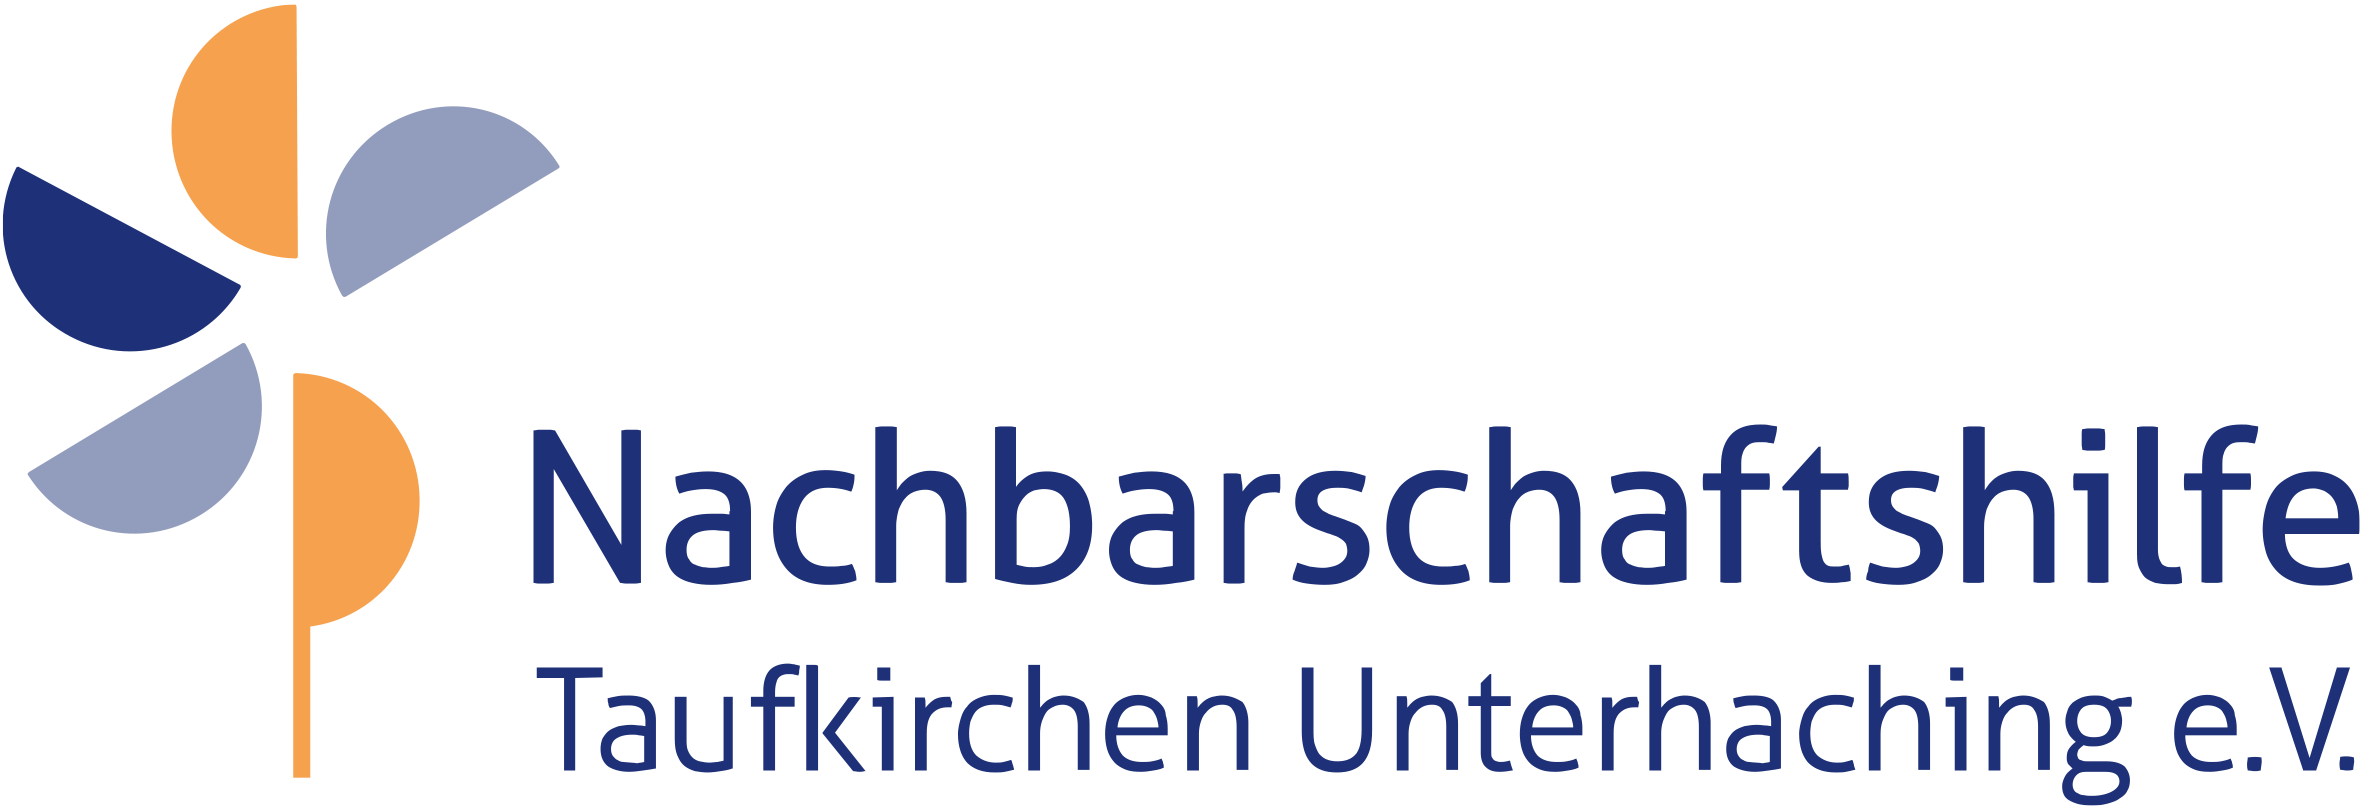 Nachbarschaftshilfe Taufkirchen Unterhaching - News Article